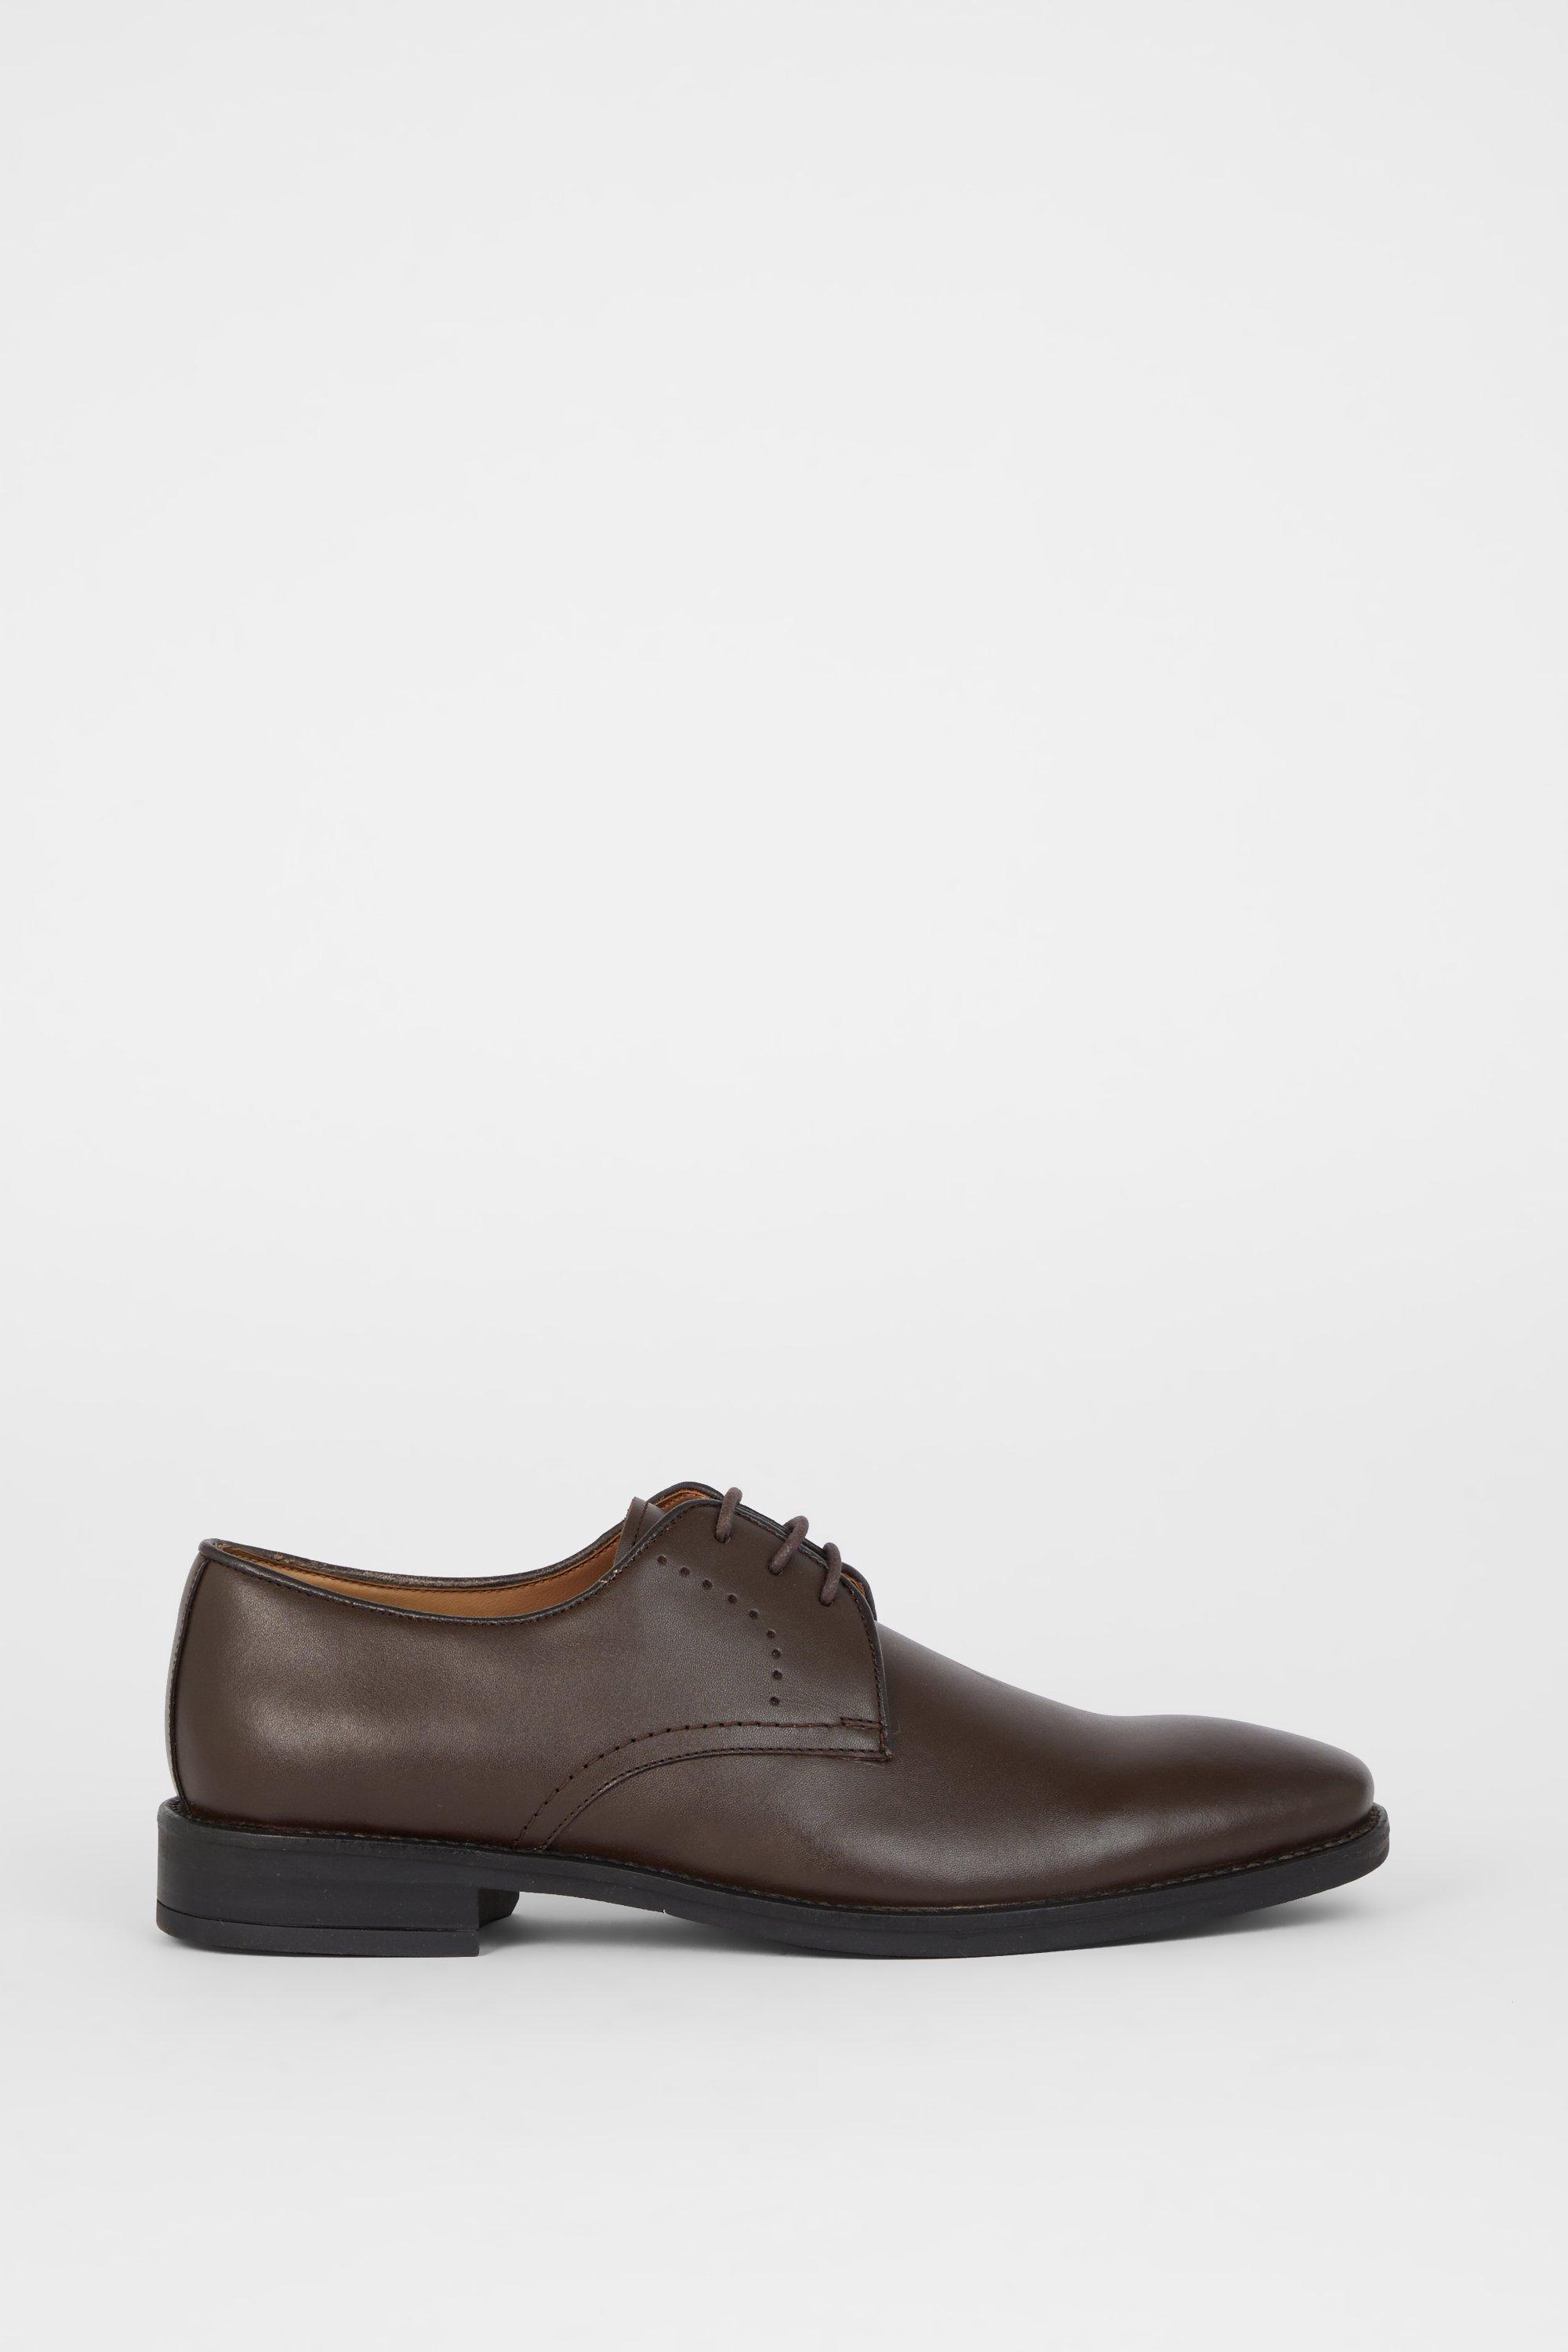 Кожаные туфли дерби Airsoft Comfort с перфорацией на шнуровке Debenhams, коричневый черные кожаные дерби stefan cooke